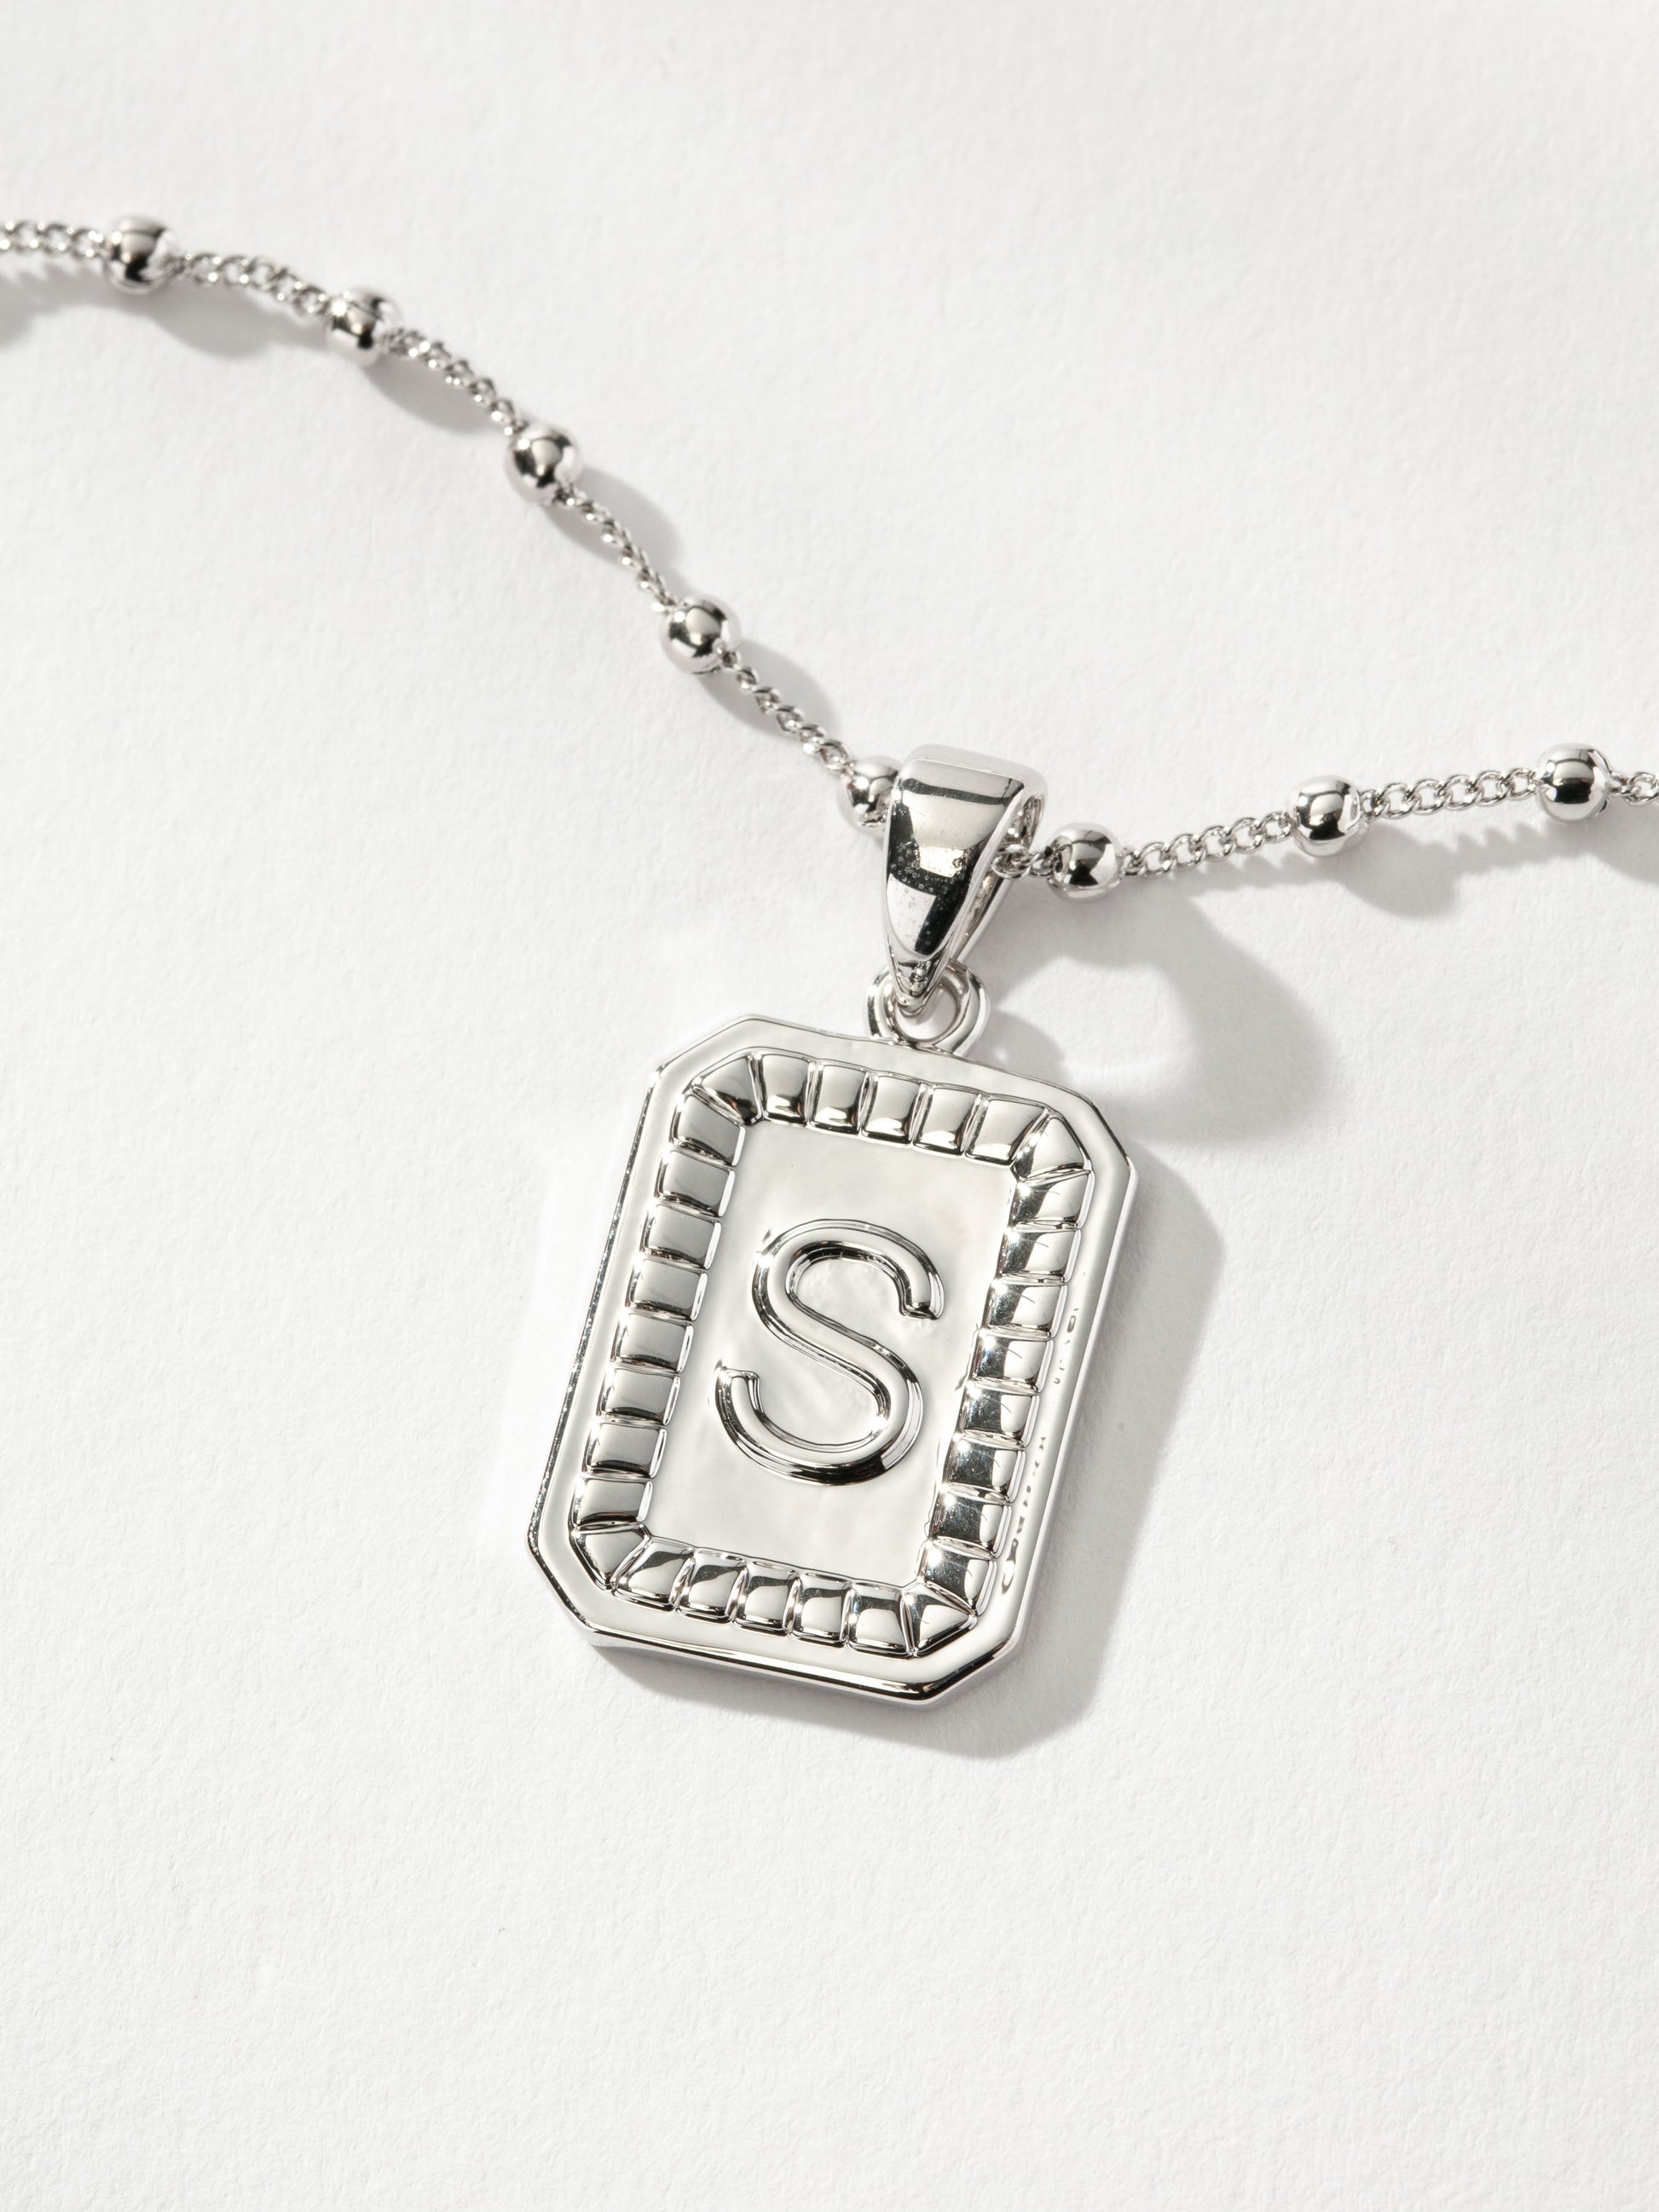 Sur Necklace | Silver S | Product Image | Uncommon James